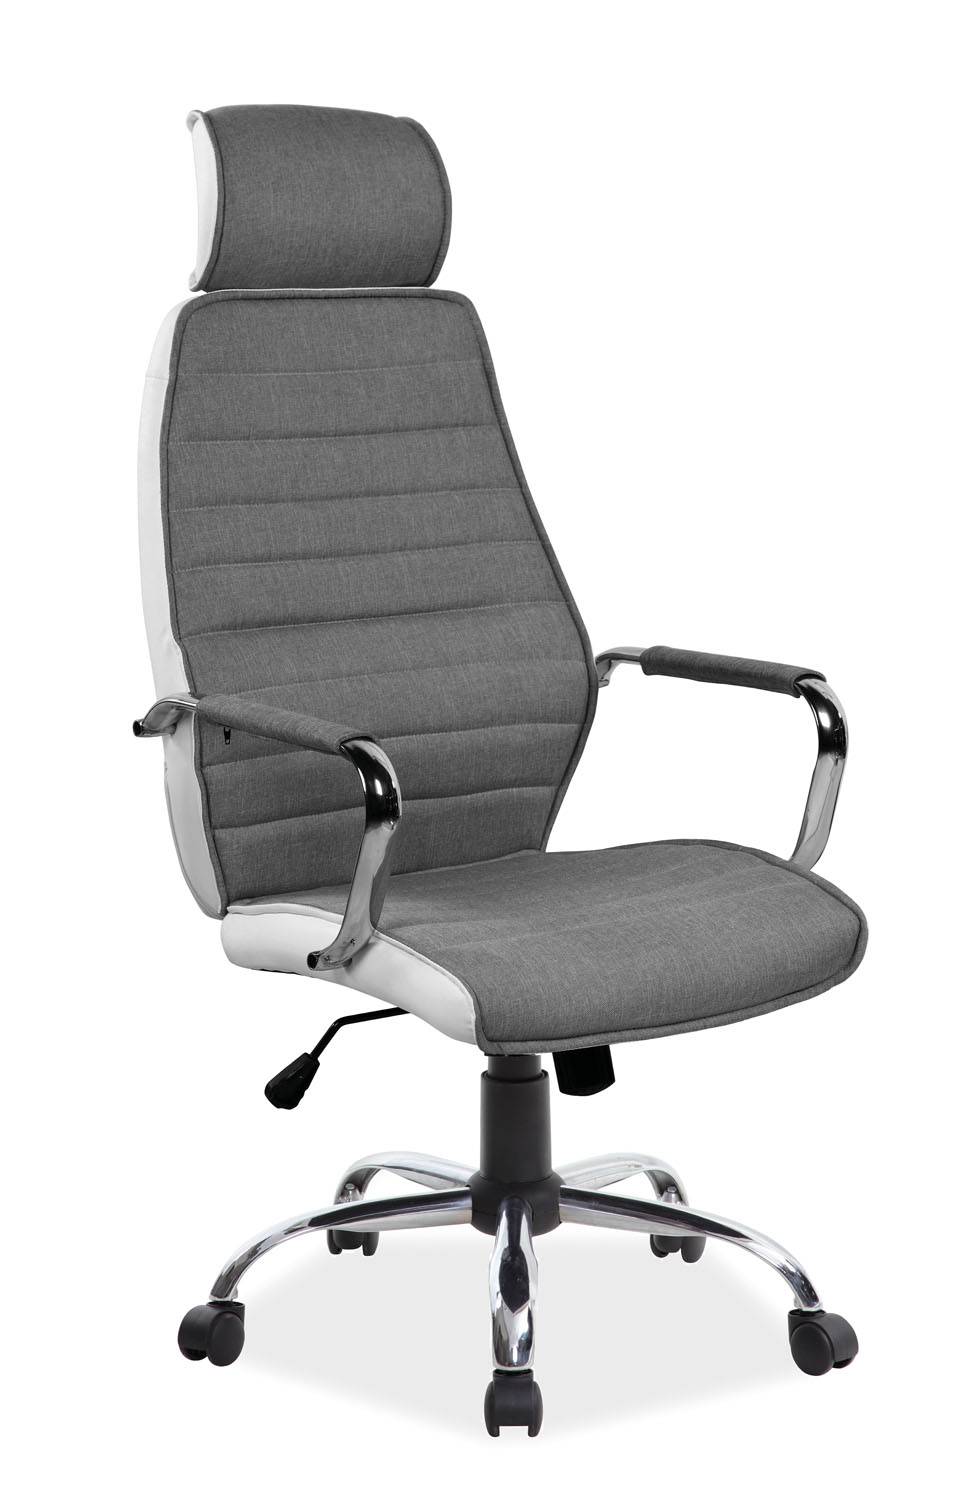 Kancelárska stolička Q-035